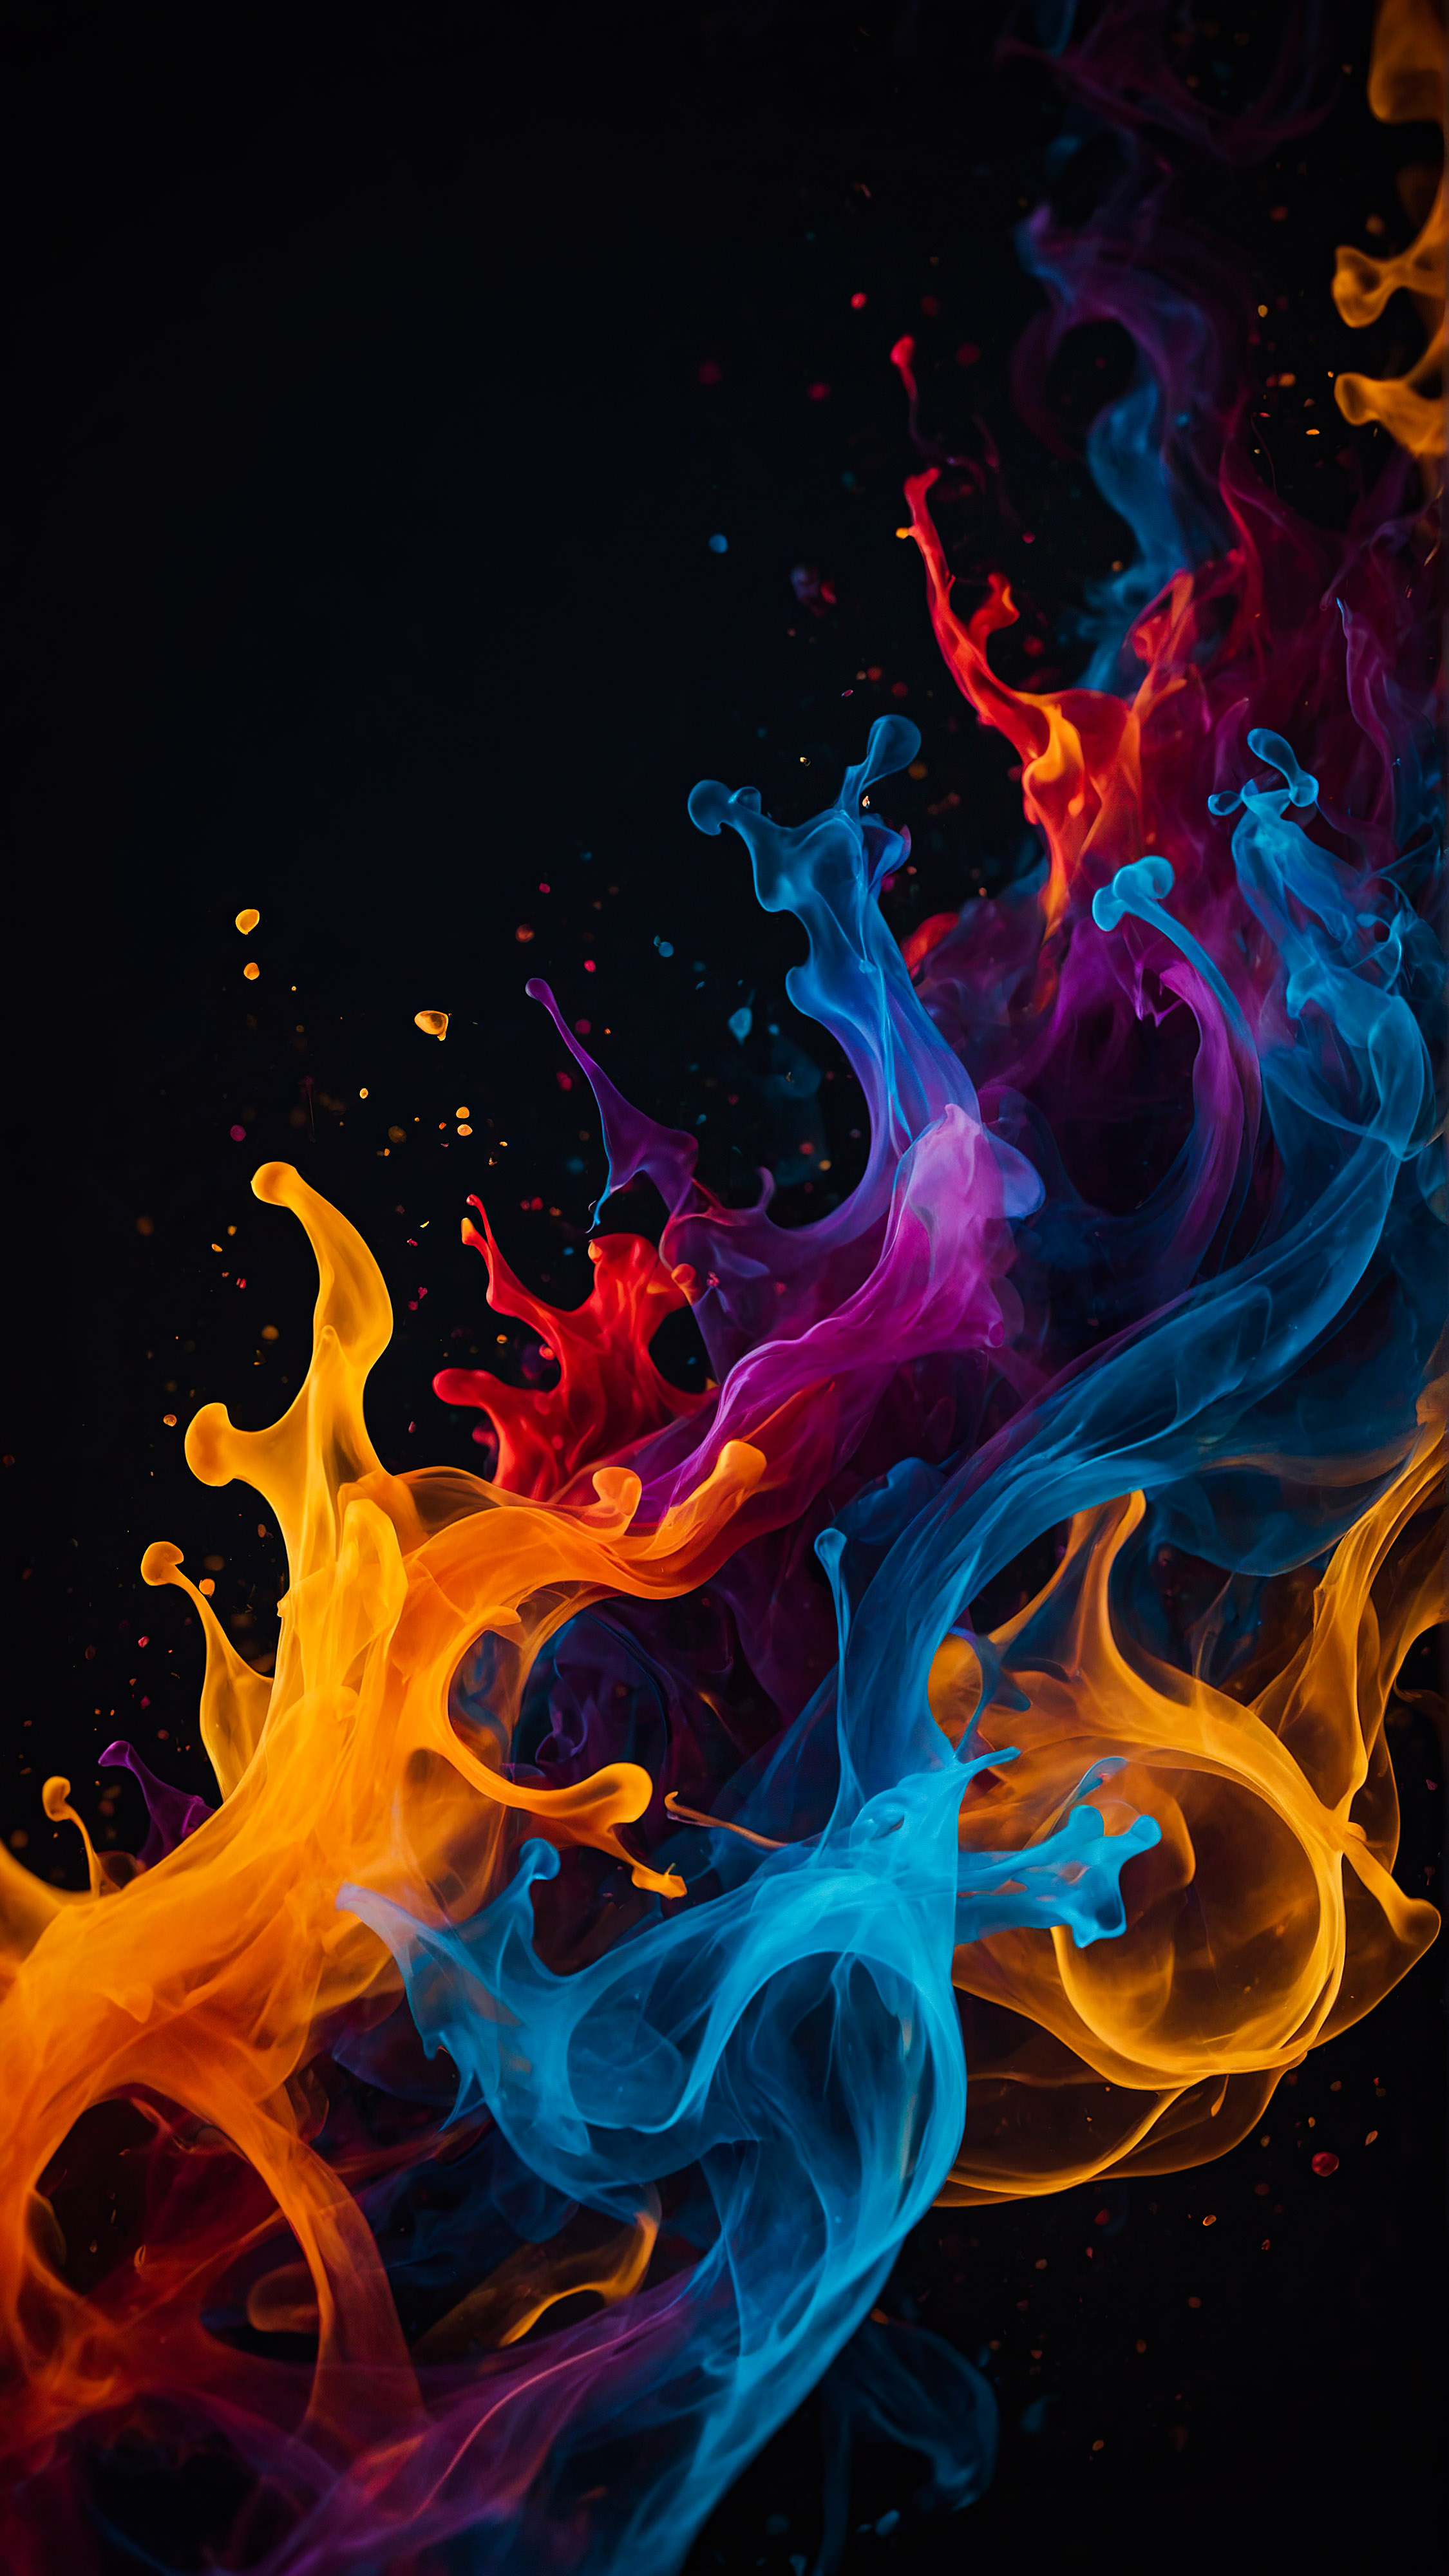 Ressentez le mouvement et l'énergie avec notre arrière-plan noir pour iPhone en 4K, présentant des formes abstraites entrelacées qui ressemblent à des flammes colorées sur un fond sombre.